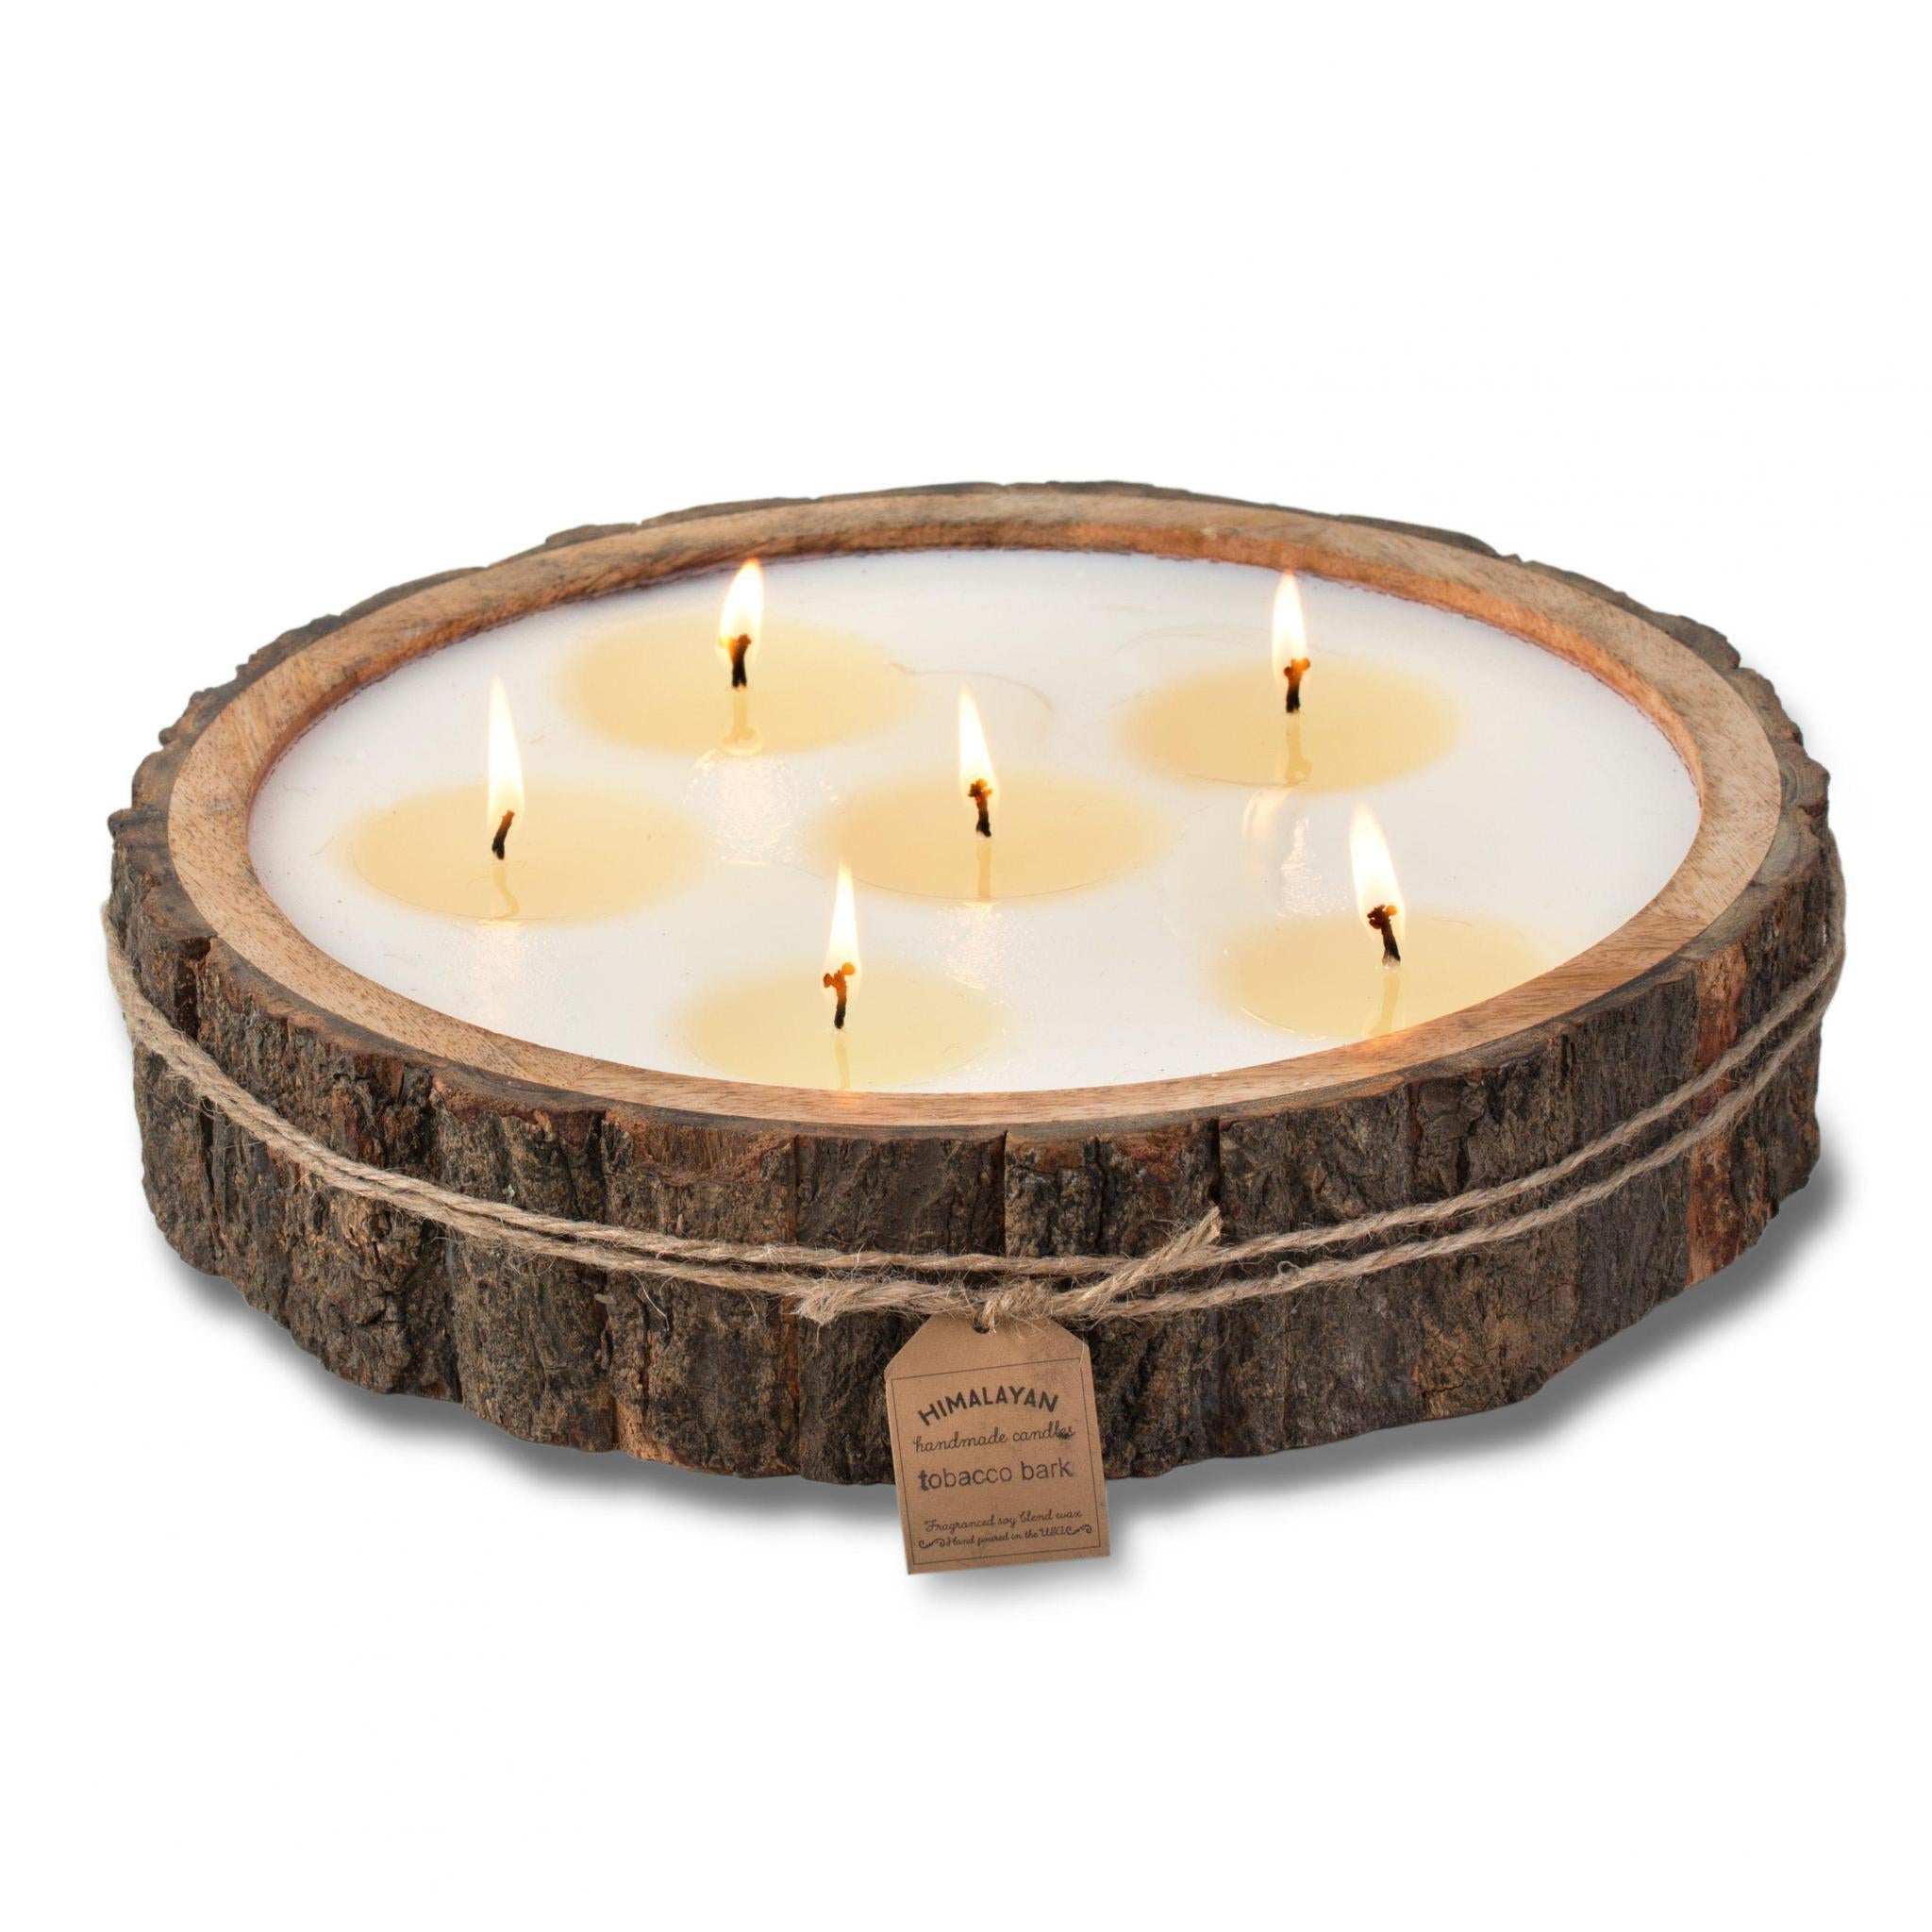 Rustic Medium Tree Bark Pot Candle - Himalayan Trading Post